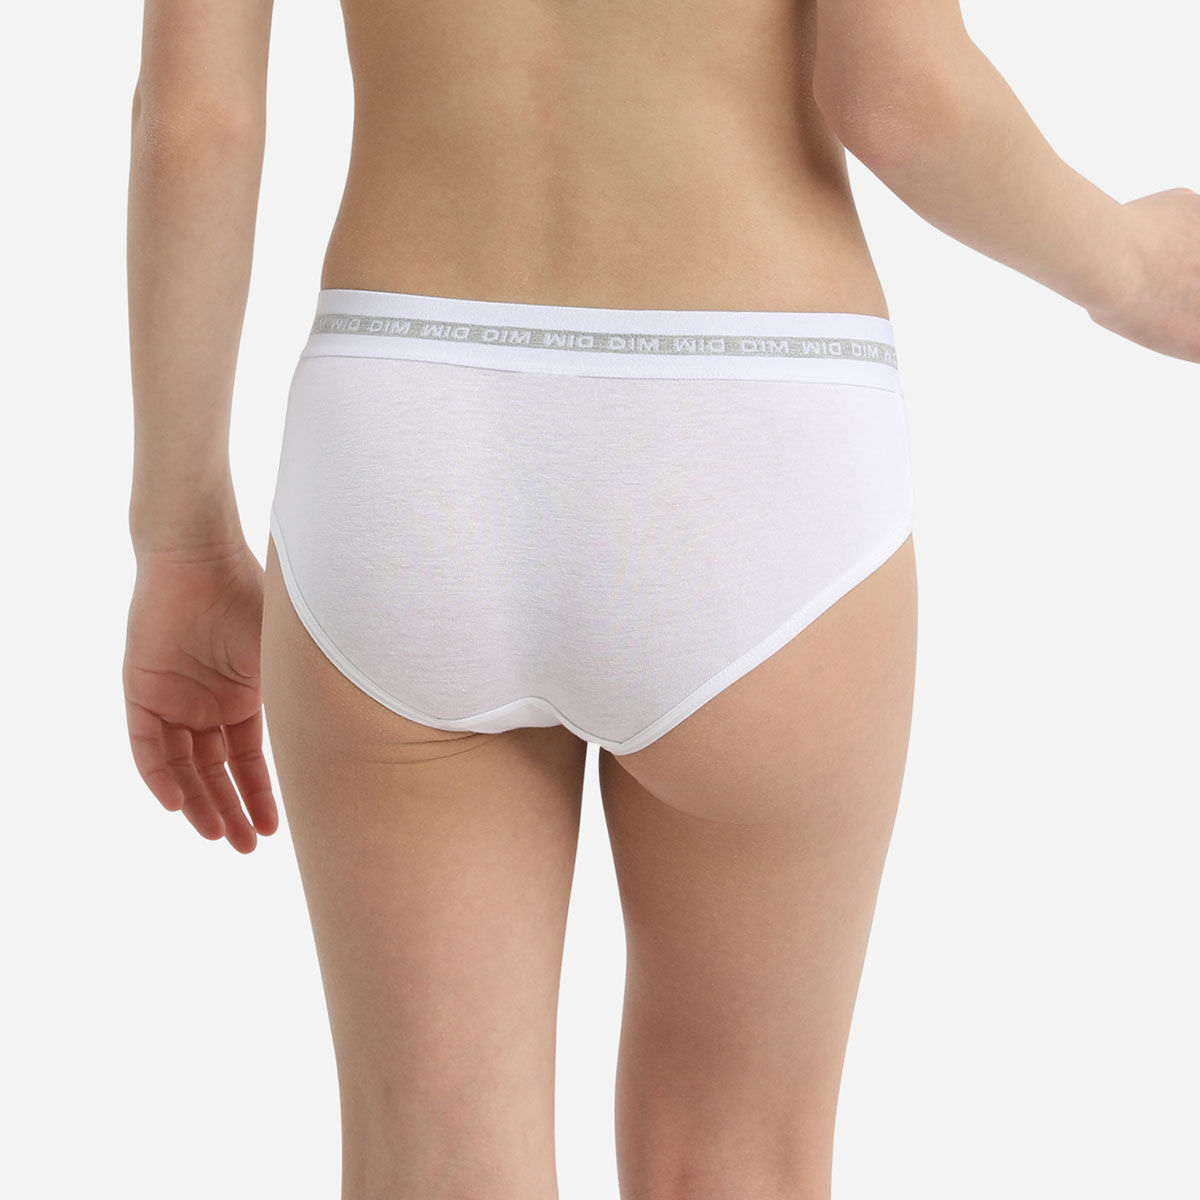 Girls Wet White Cotton Panties